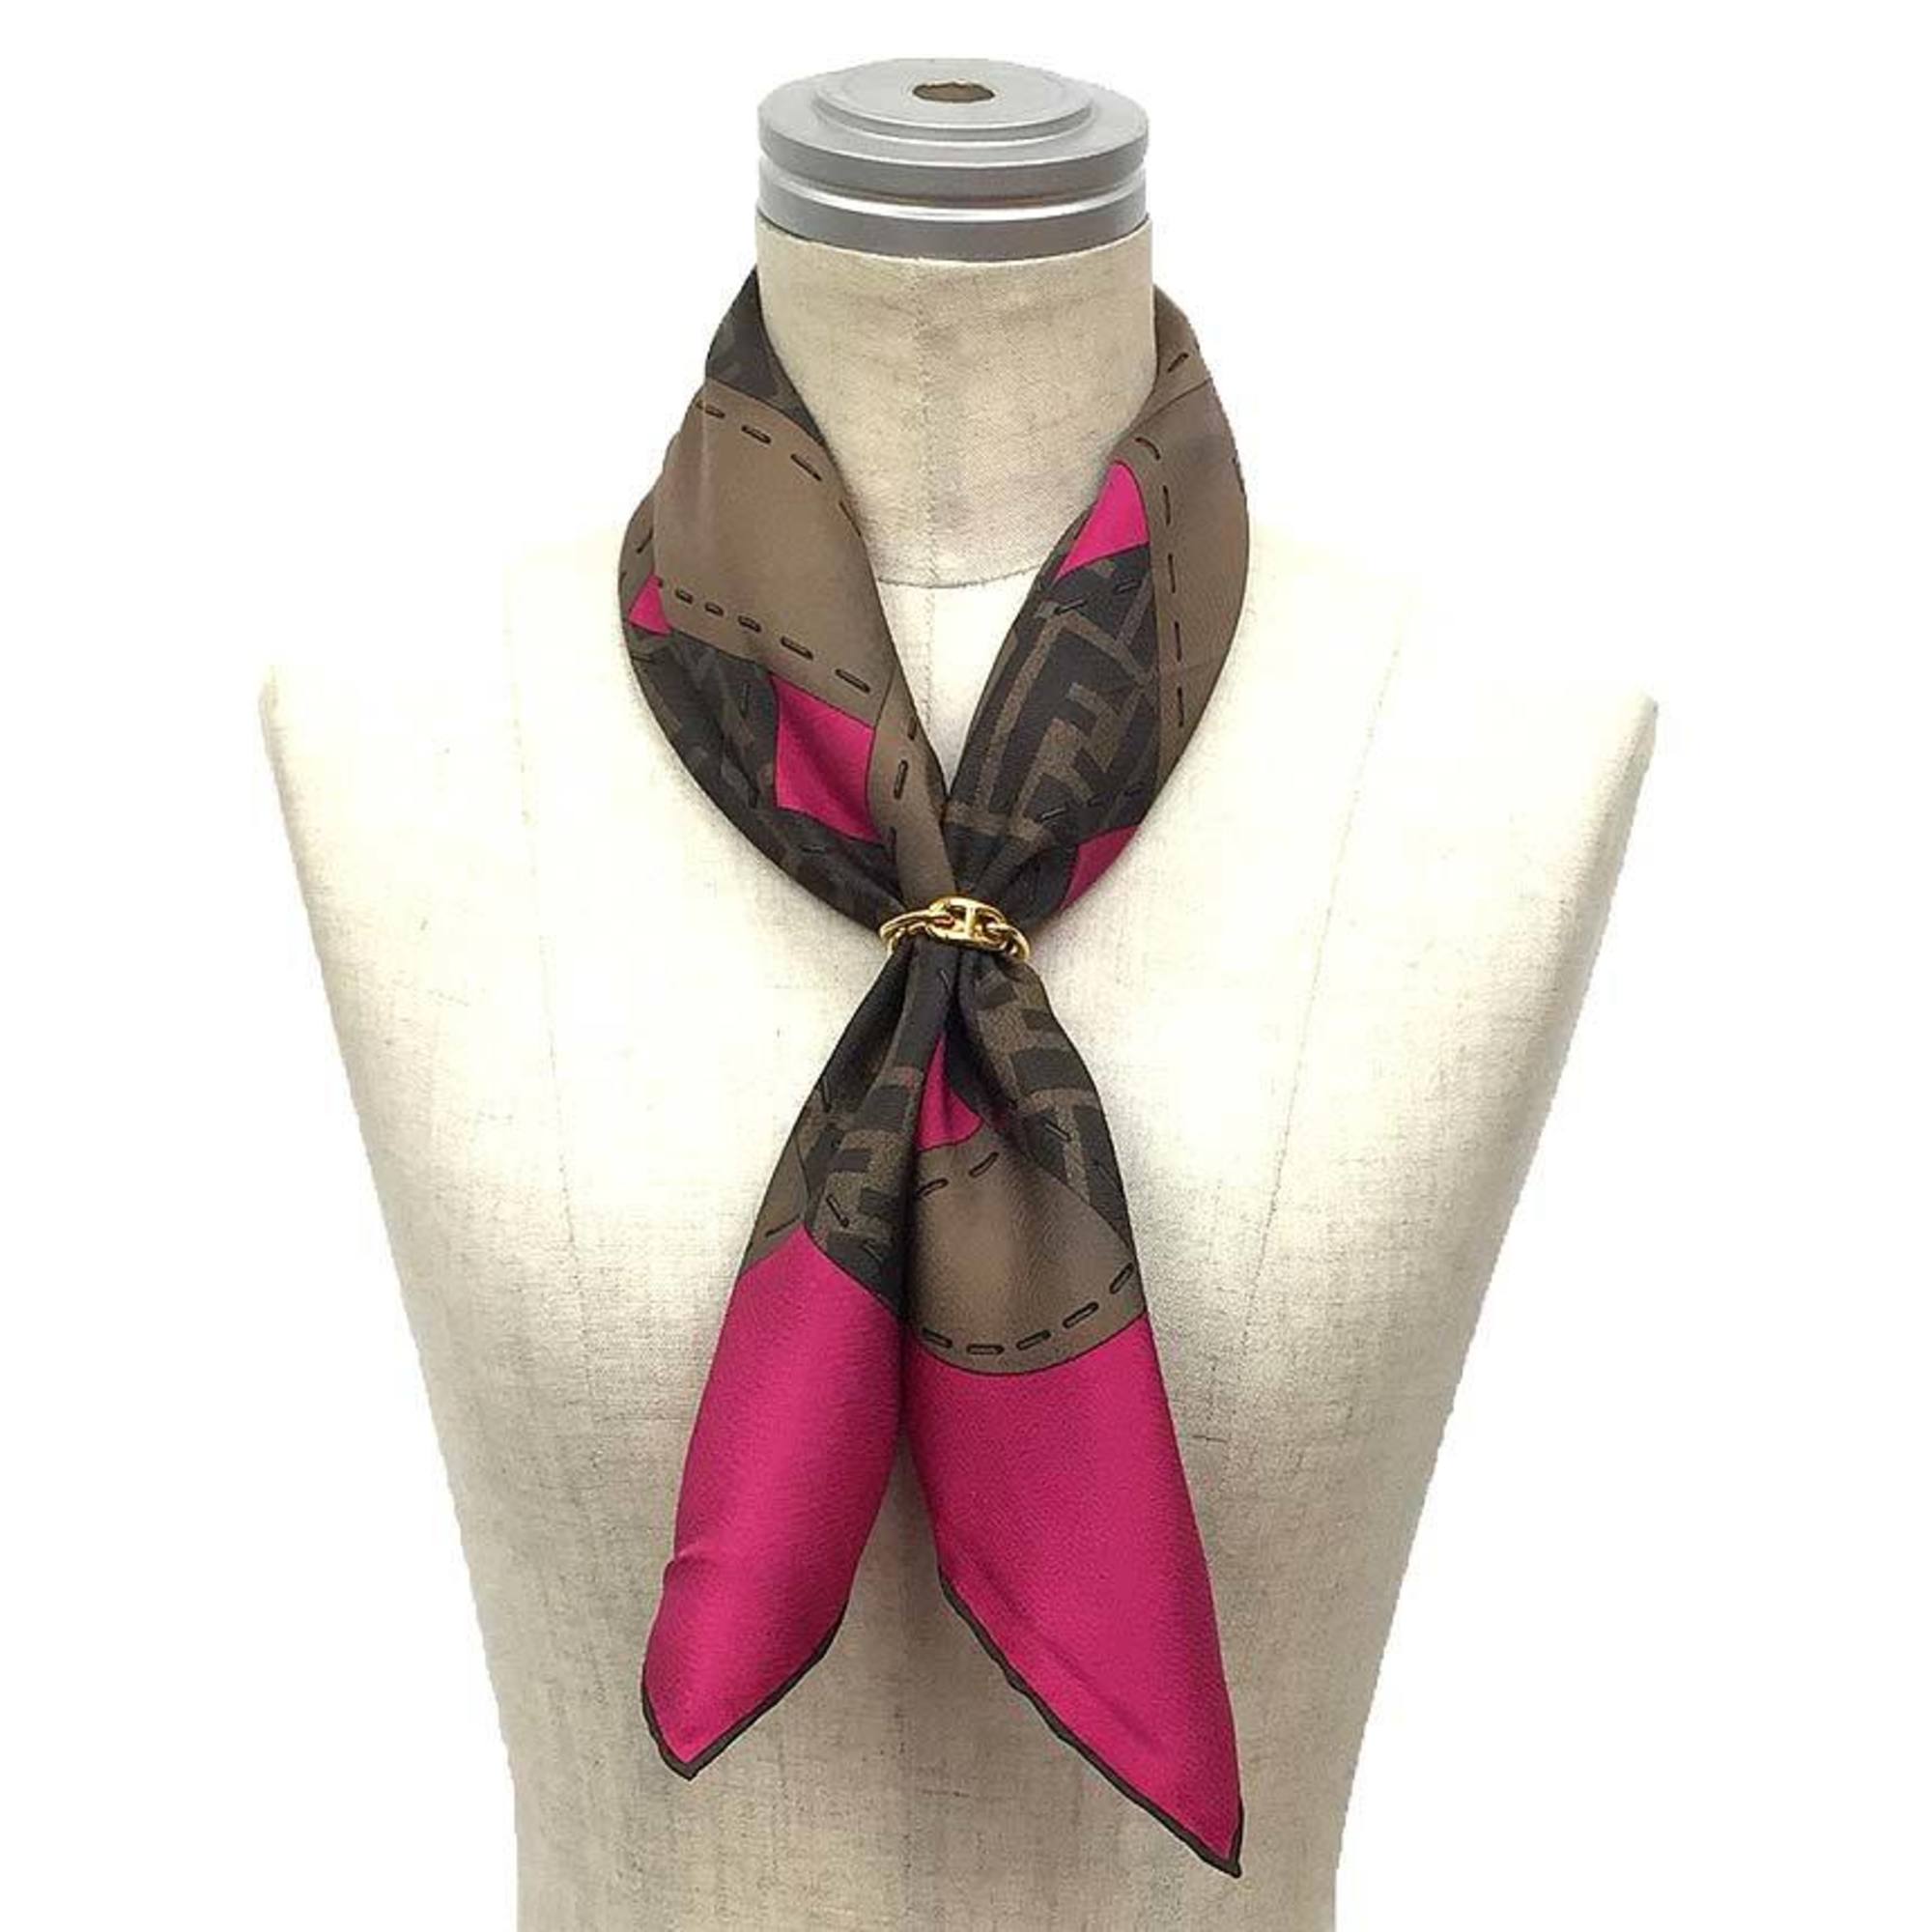 FENDI Zucca pattern scarf muffler FXT986 100% silk pink x brown Fendi aq9398